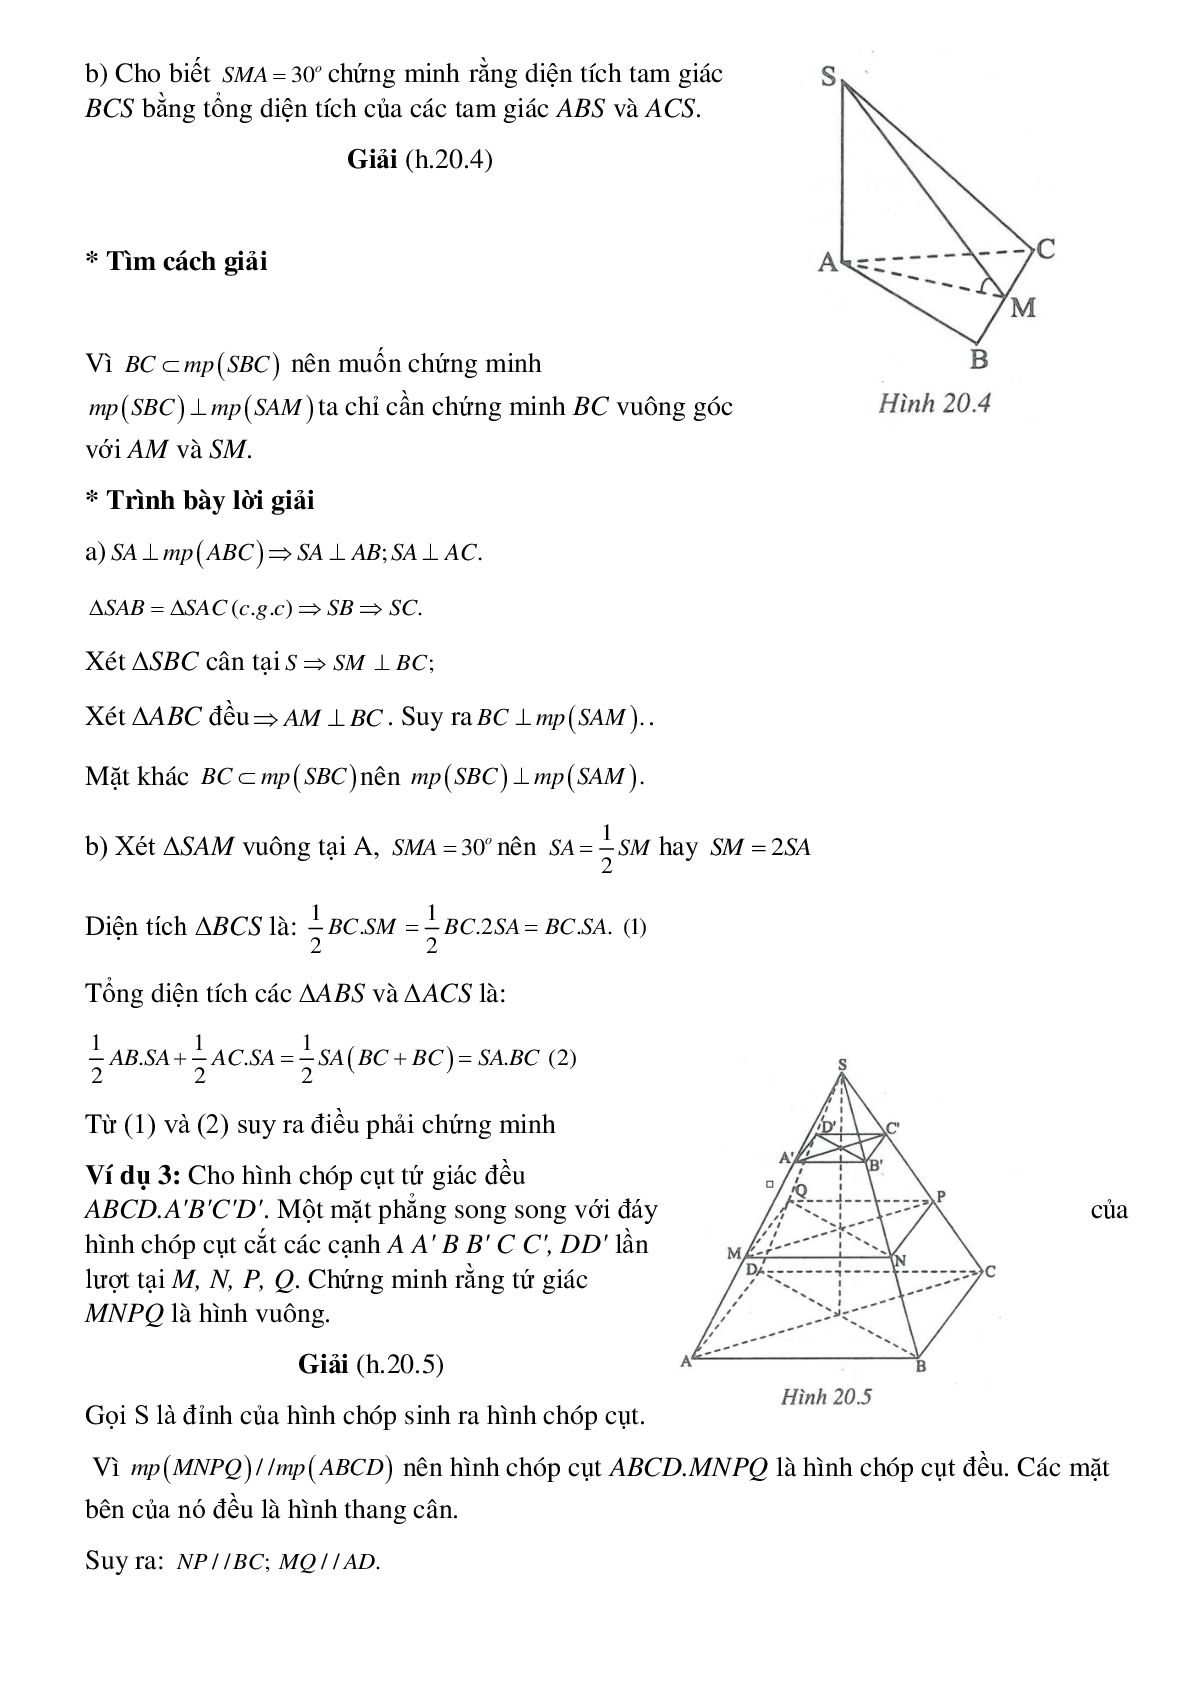 Hình chóp tam giác đều là gì? Mặt bên chóp tam giác đều là hình gì?